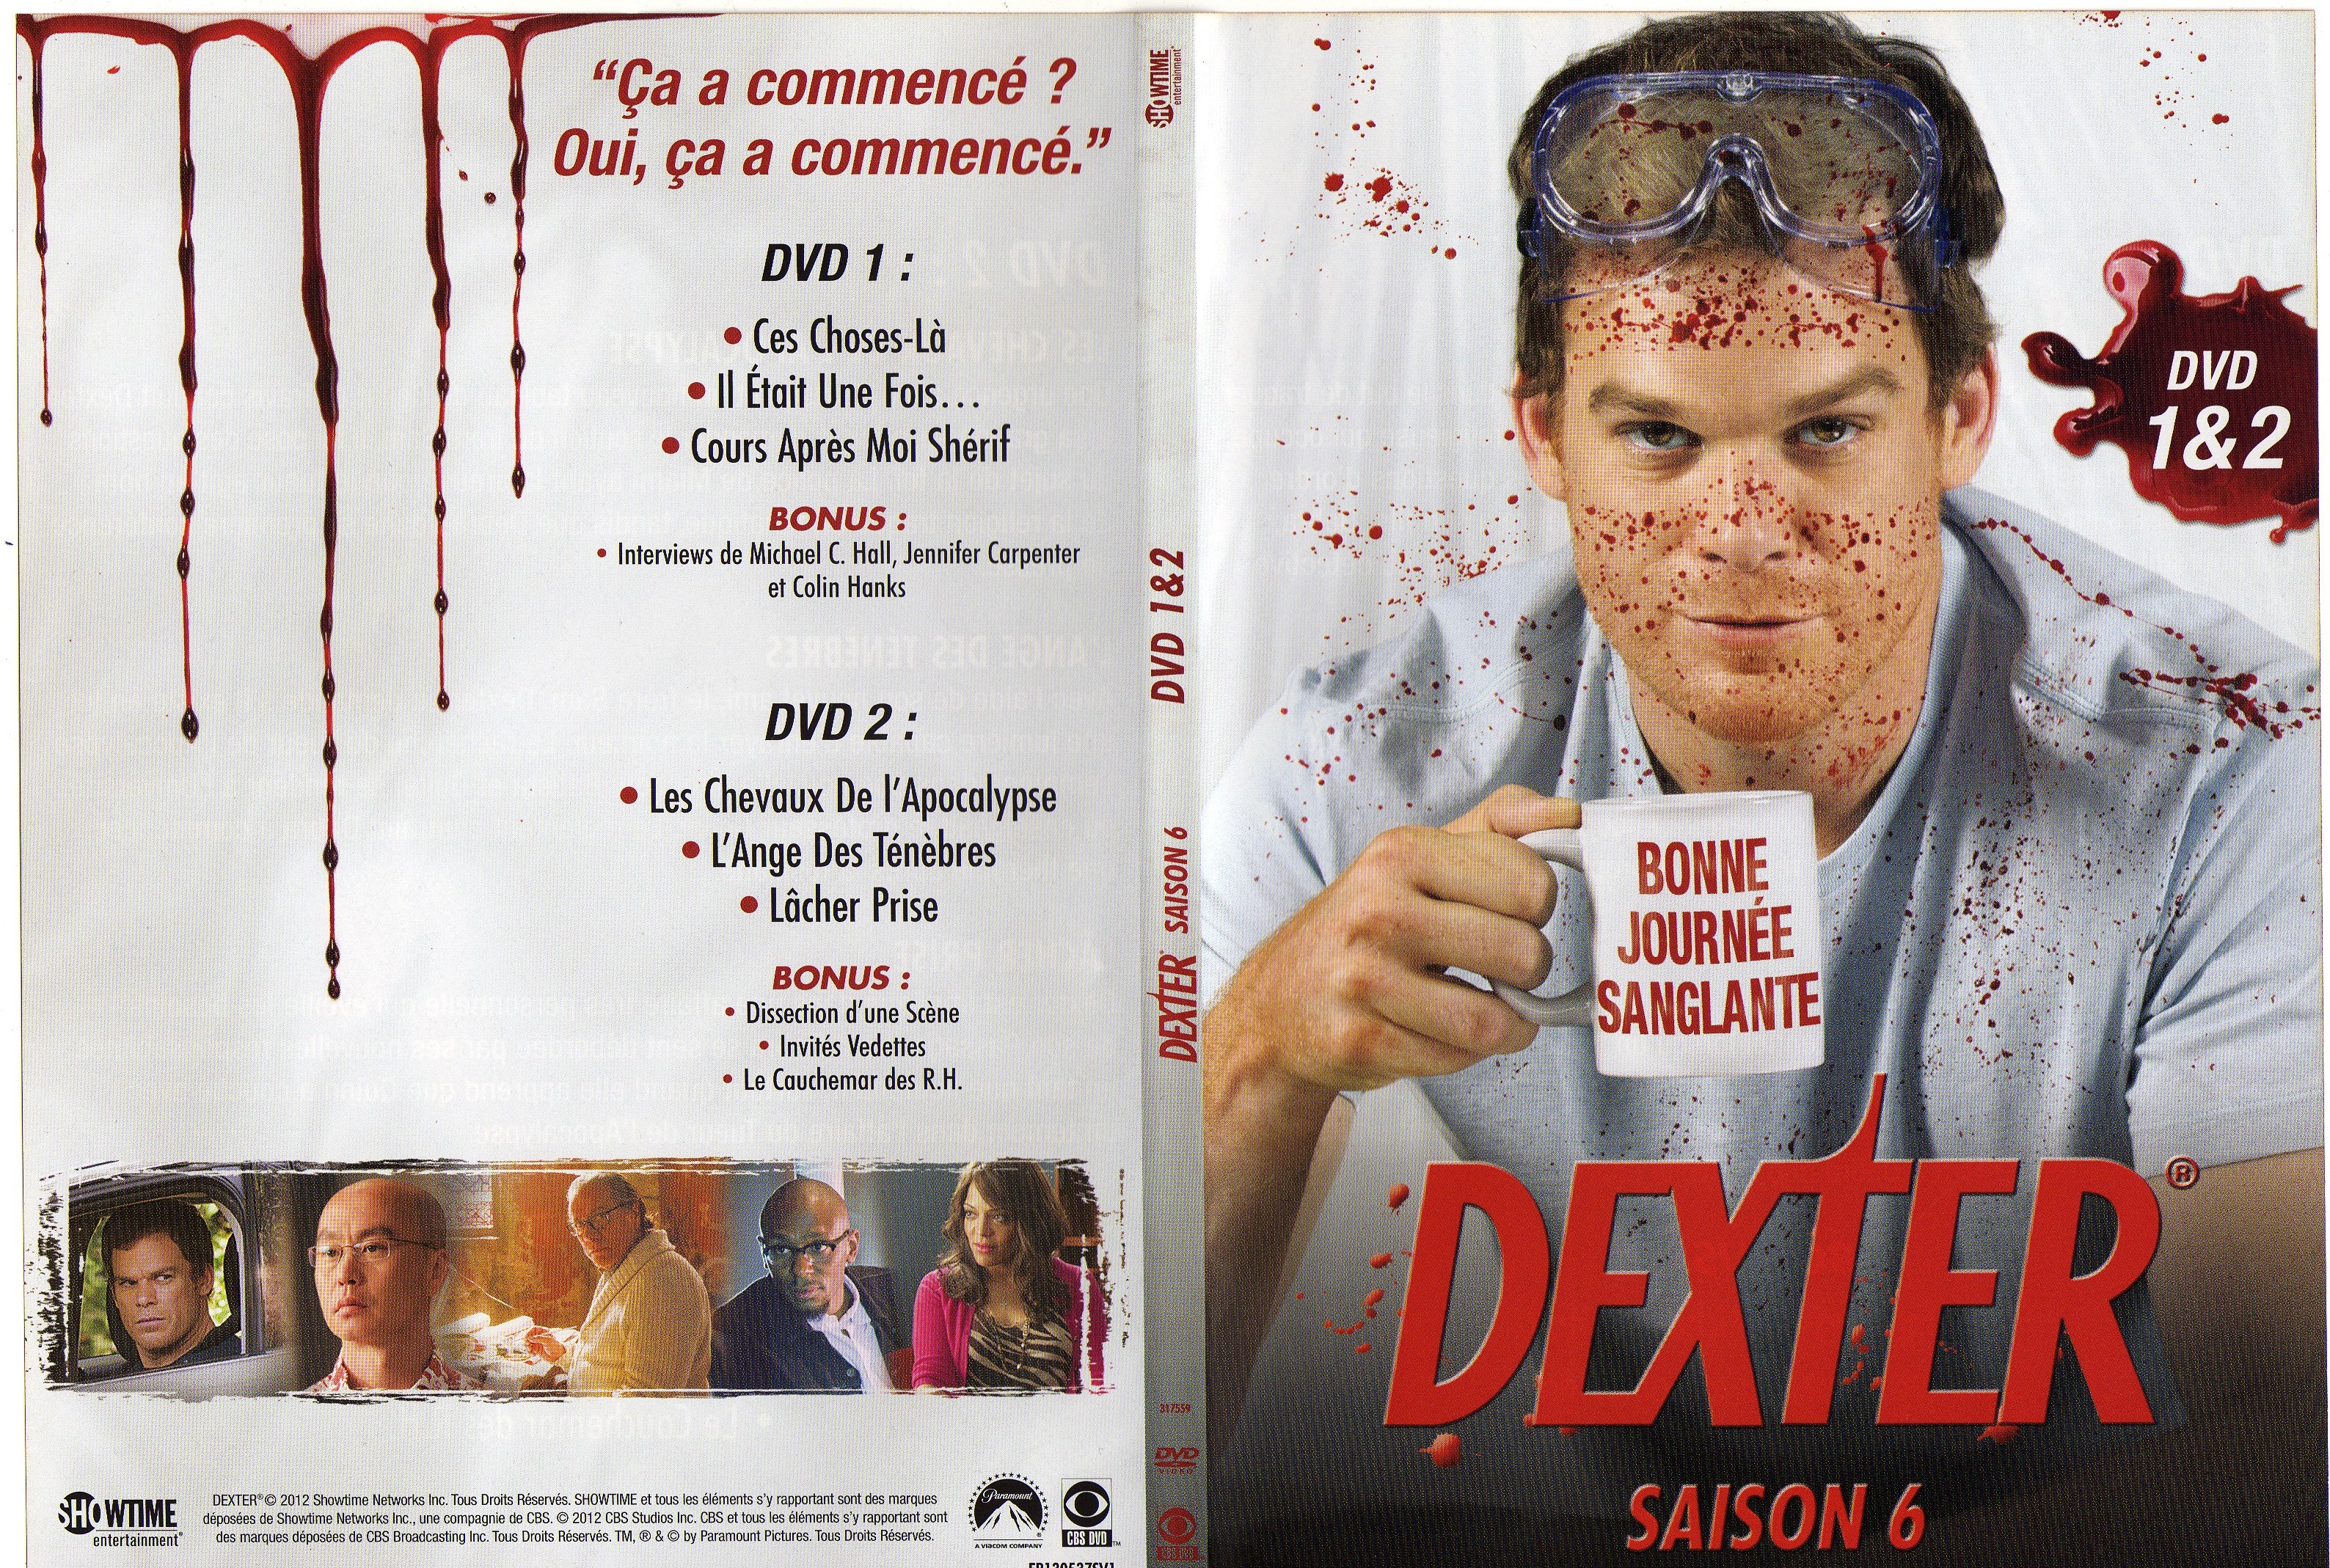 Jaquette DVD Dexter Saison 6 DVD 1